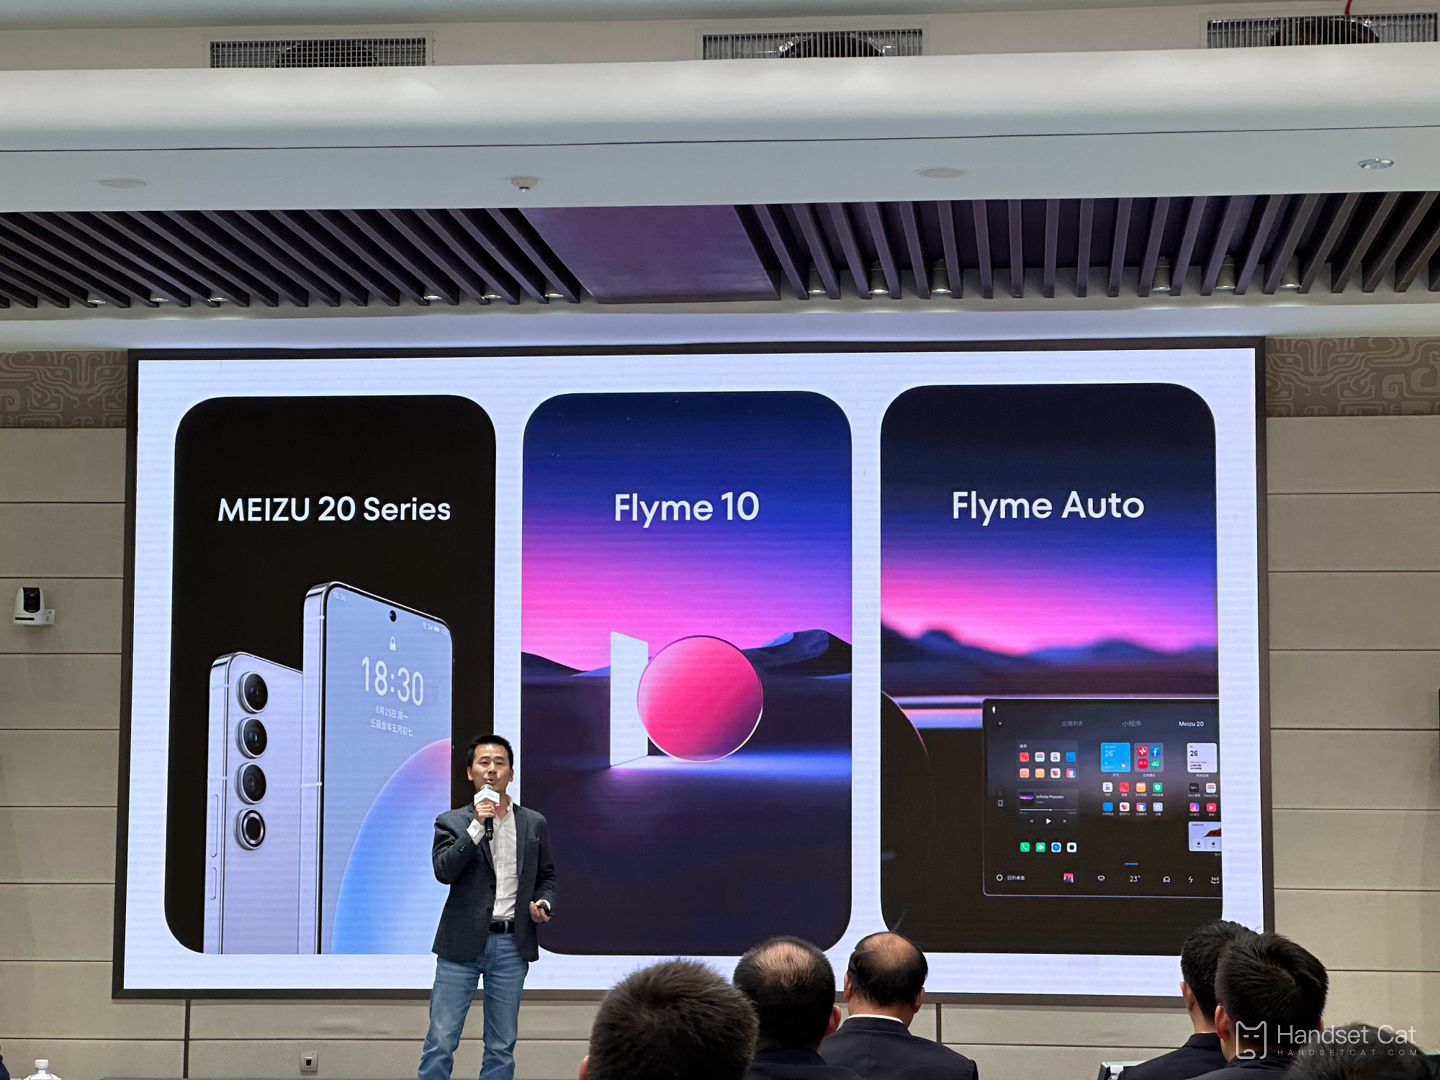 Os telefones celulares da série Meizu 20 são oficialmente anunciados para lançamento em 30 de março, junto com o novo sistema Flyme 10